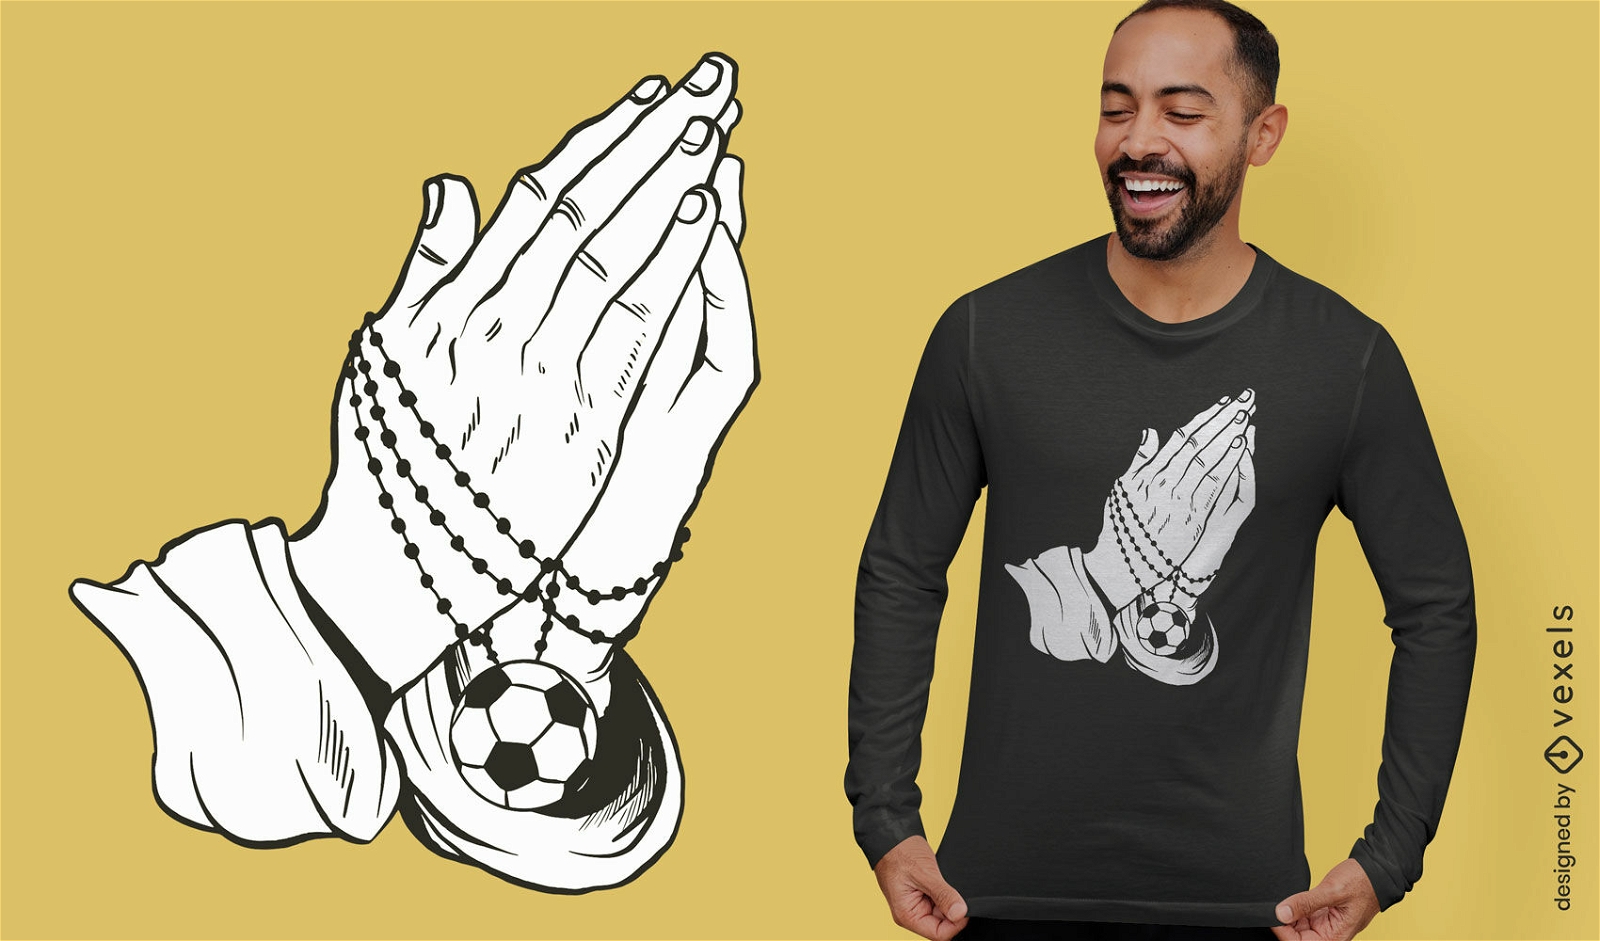 Praying hands soccer t-shirt design